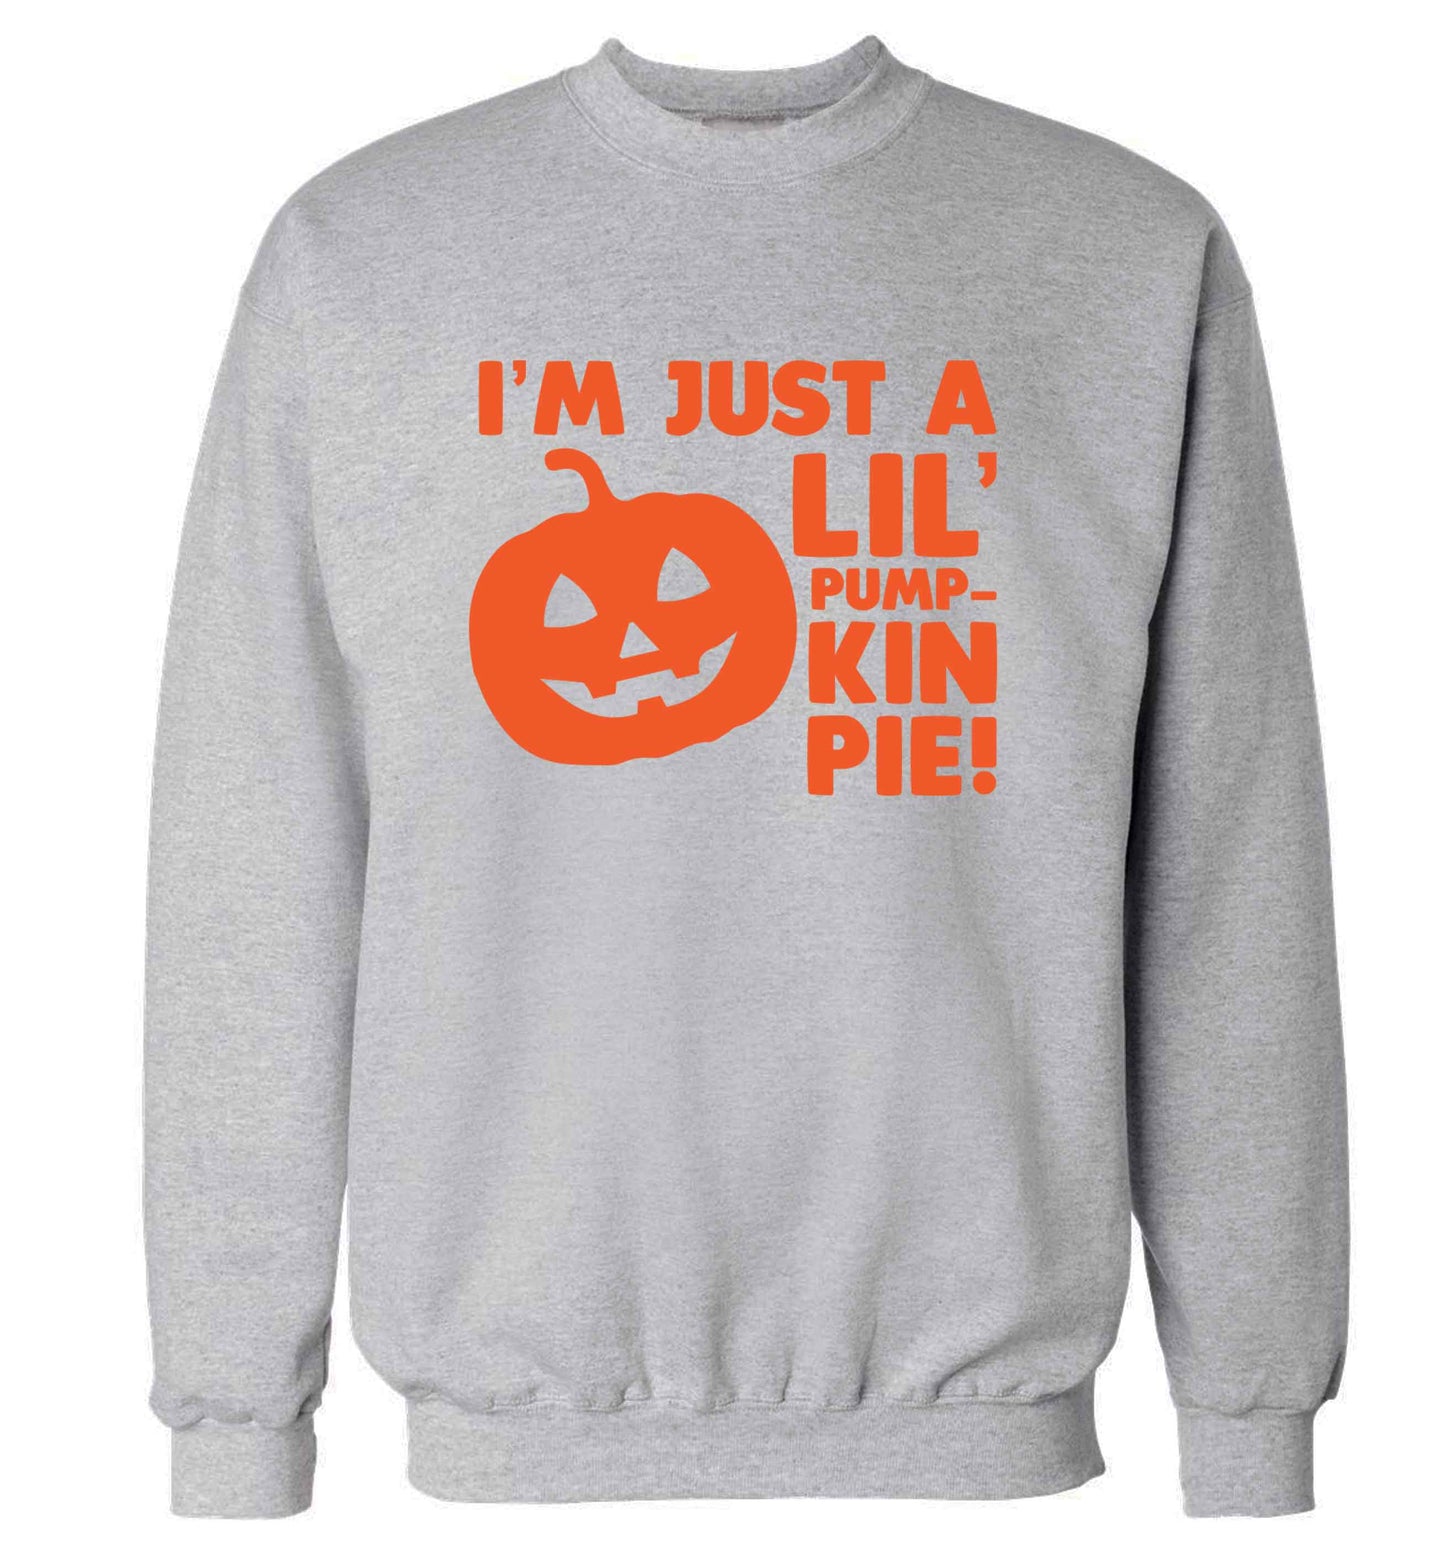 I'm just a lil' pumpkin pie adult's unisex grey sweater 2XL